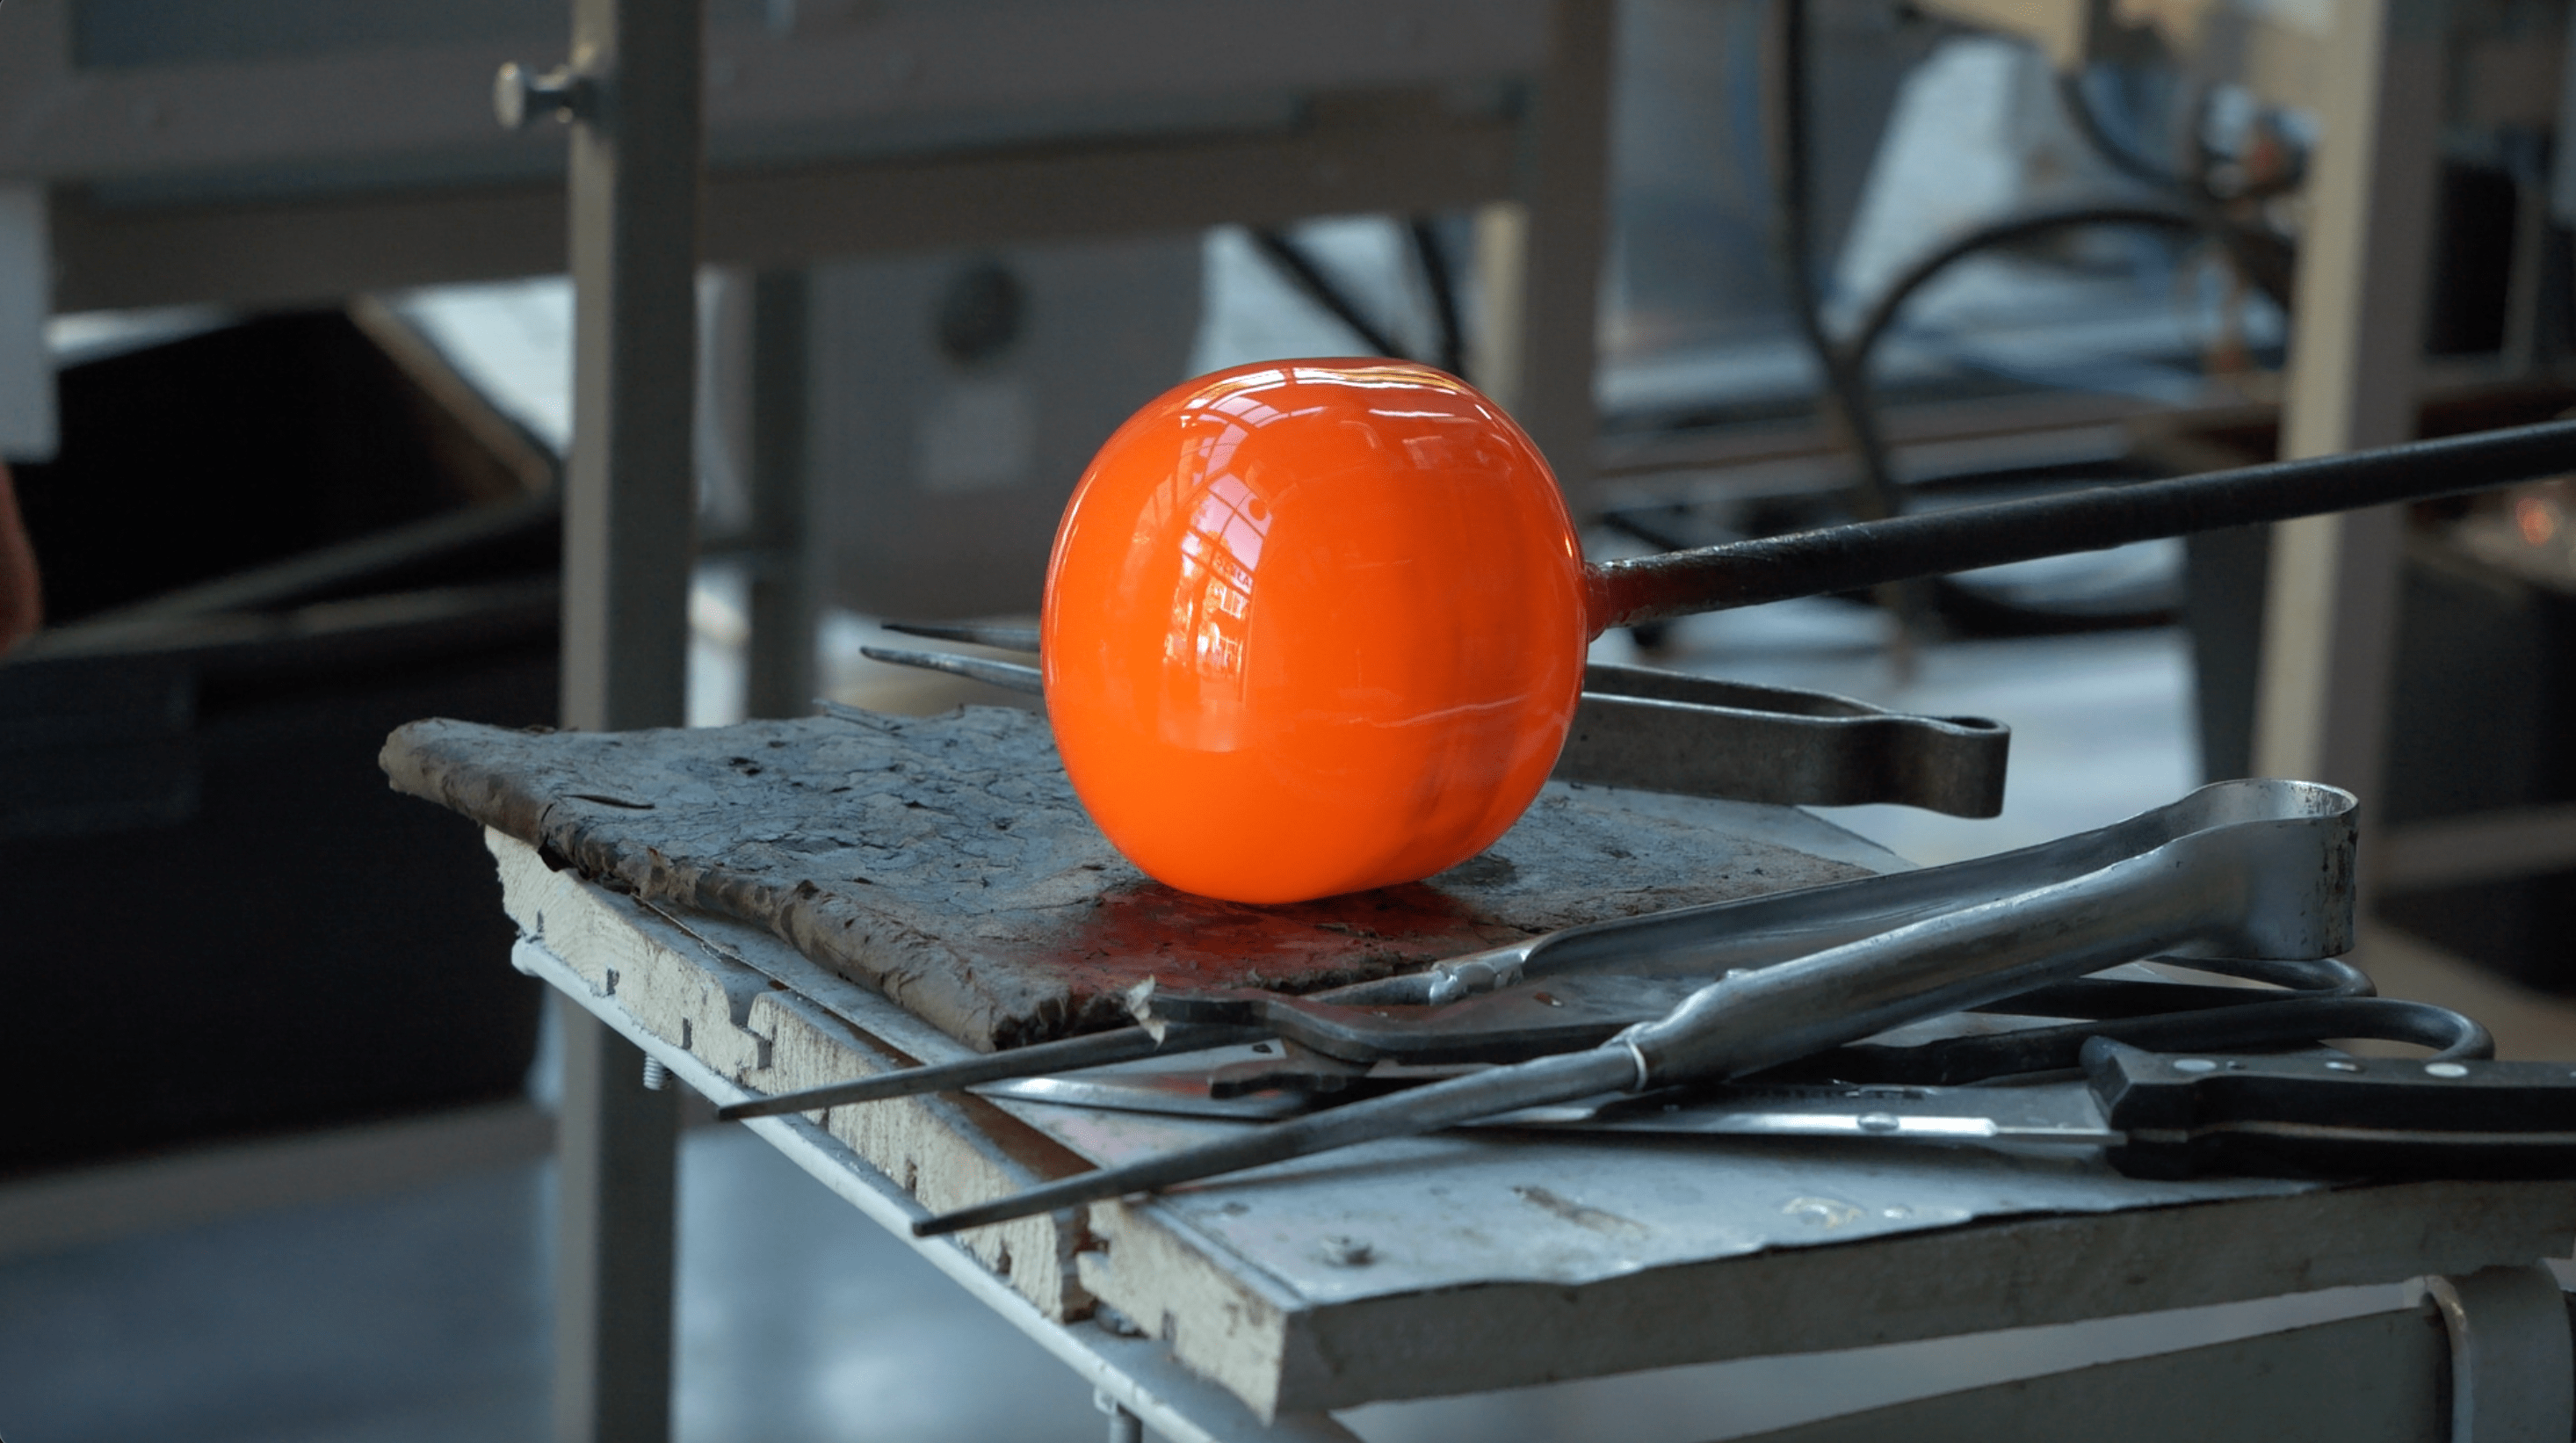 Pomarańczowa szklana kula siedzi na stole.